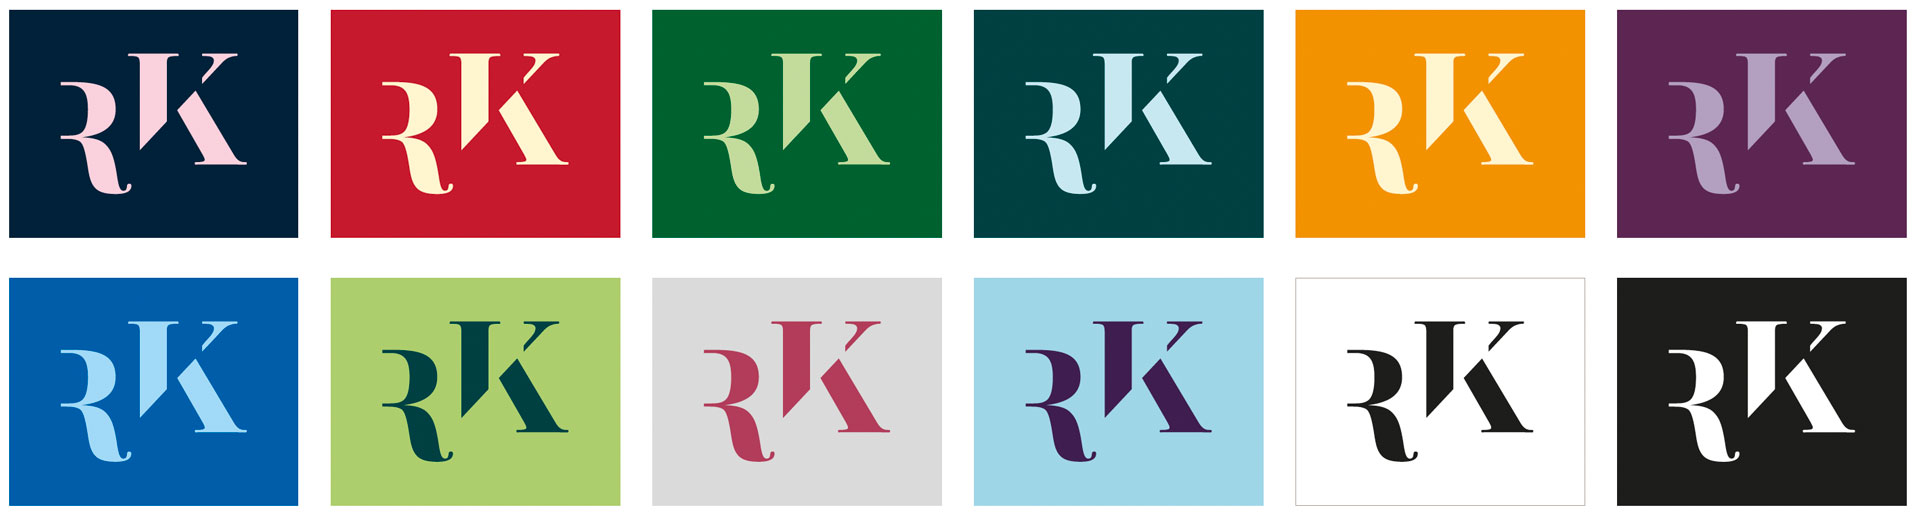 Randers Kunstmuseum logo versioner